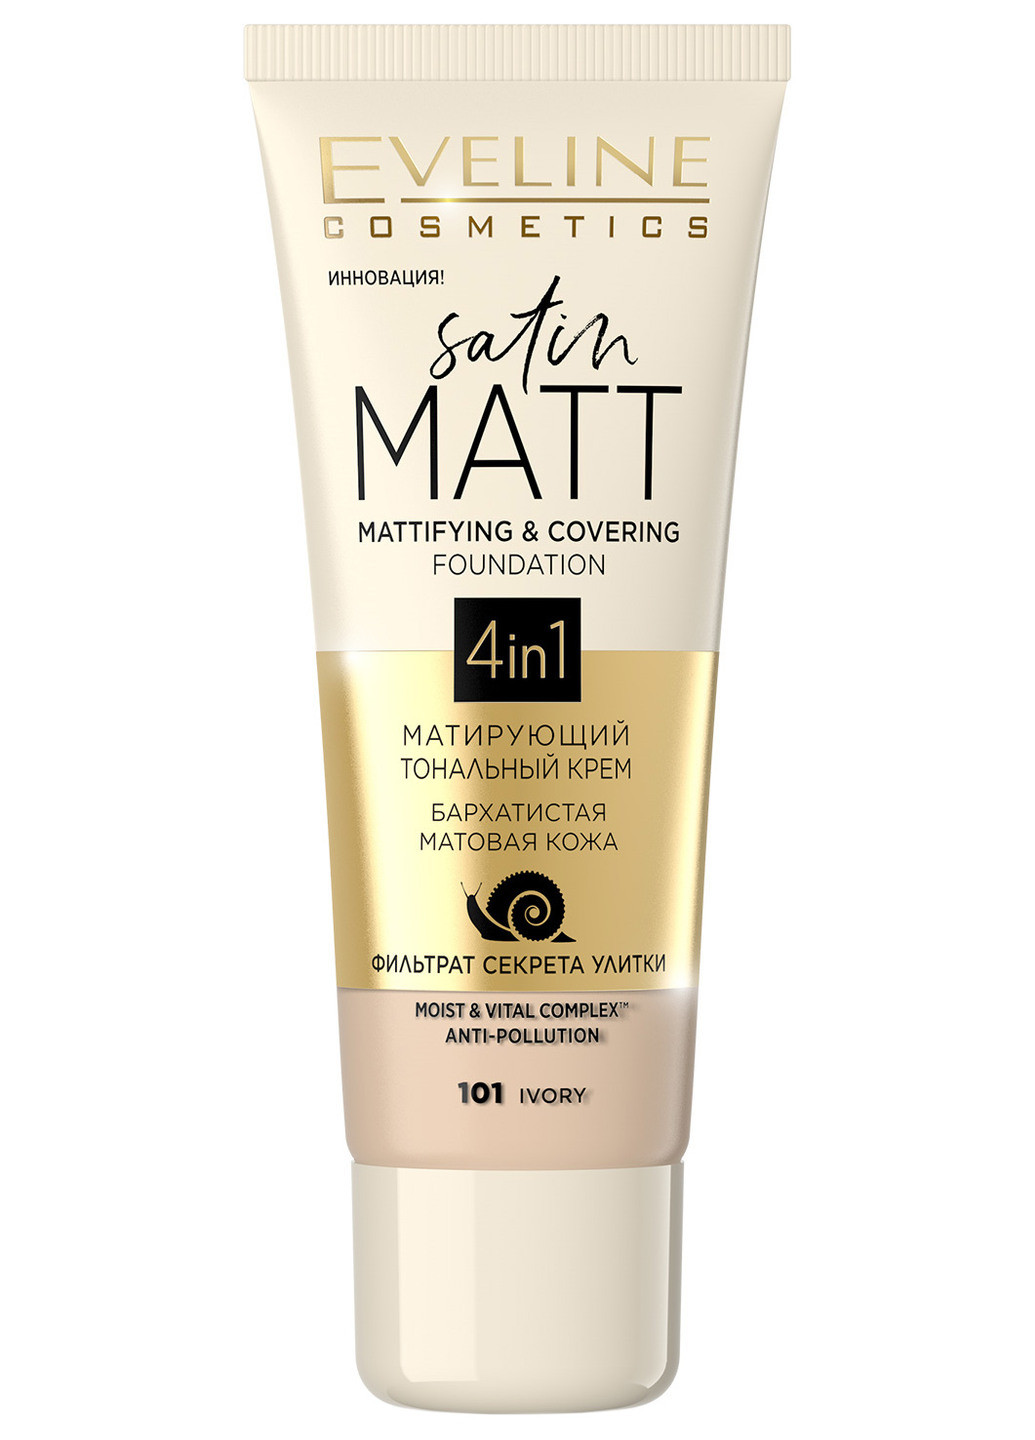 Матирующий тональный крем для лица Satin Matt Mattifying & Covering Foundation 4in1 №101 Ivory Eveline Cosmetics (190885791)